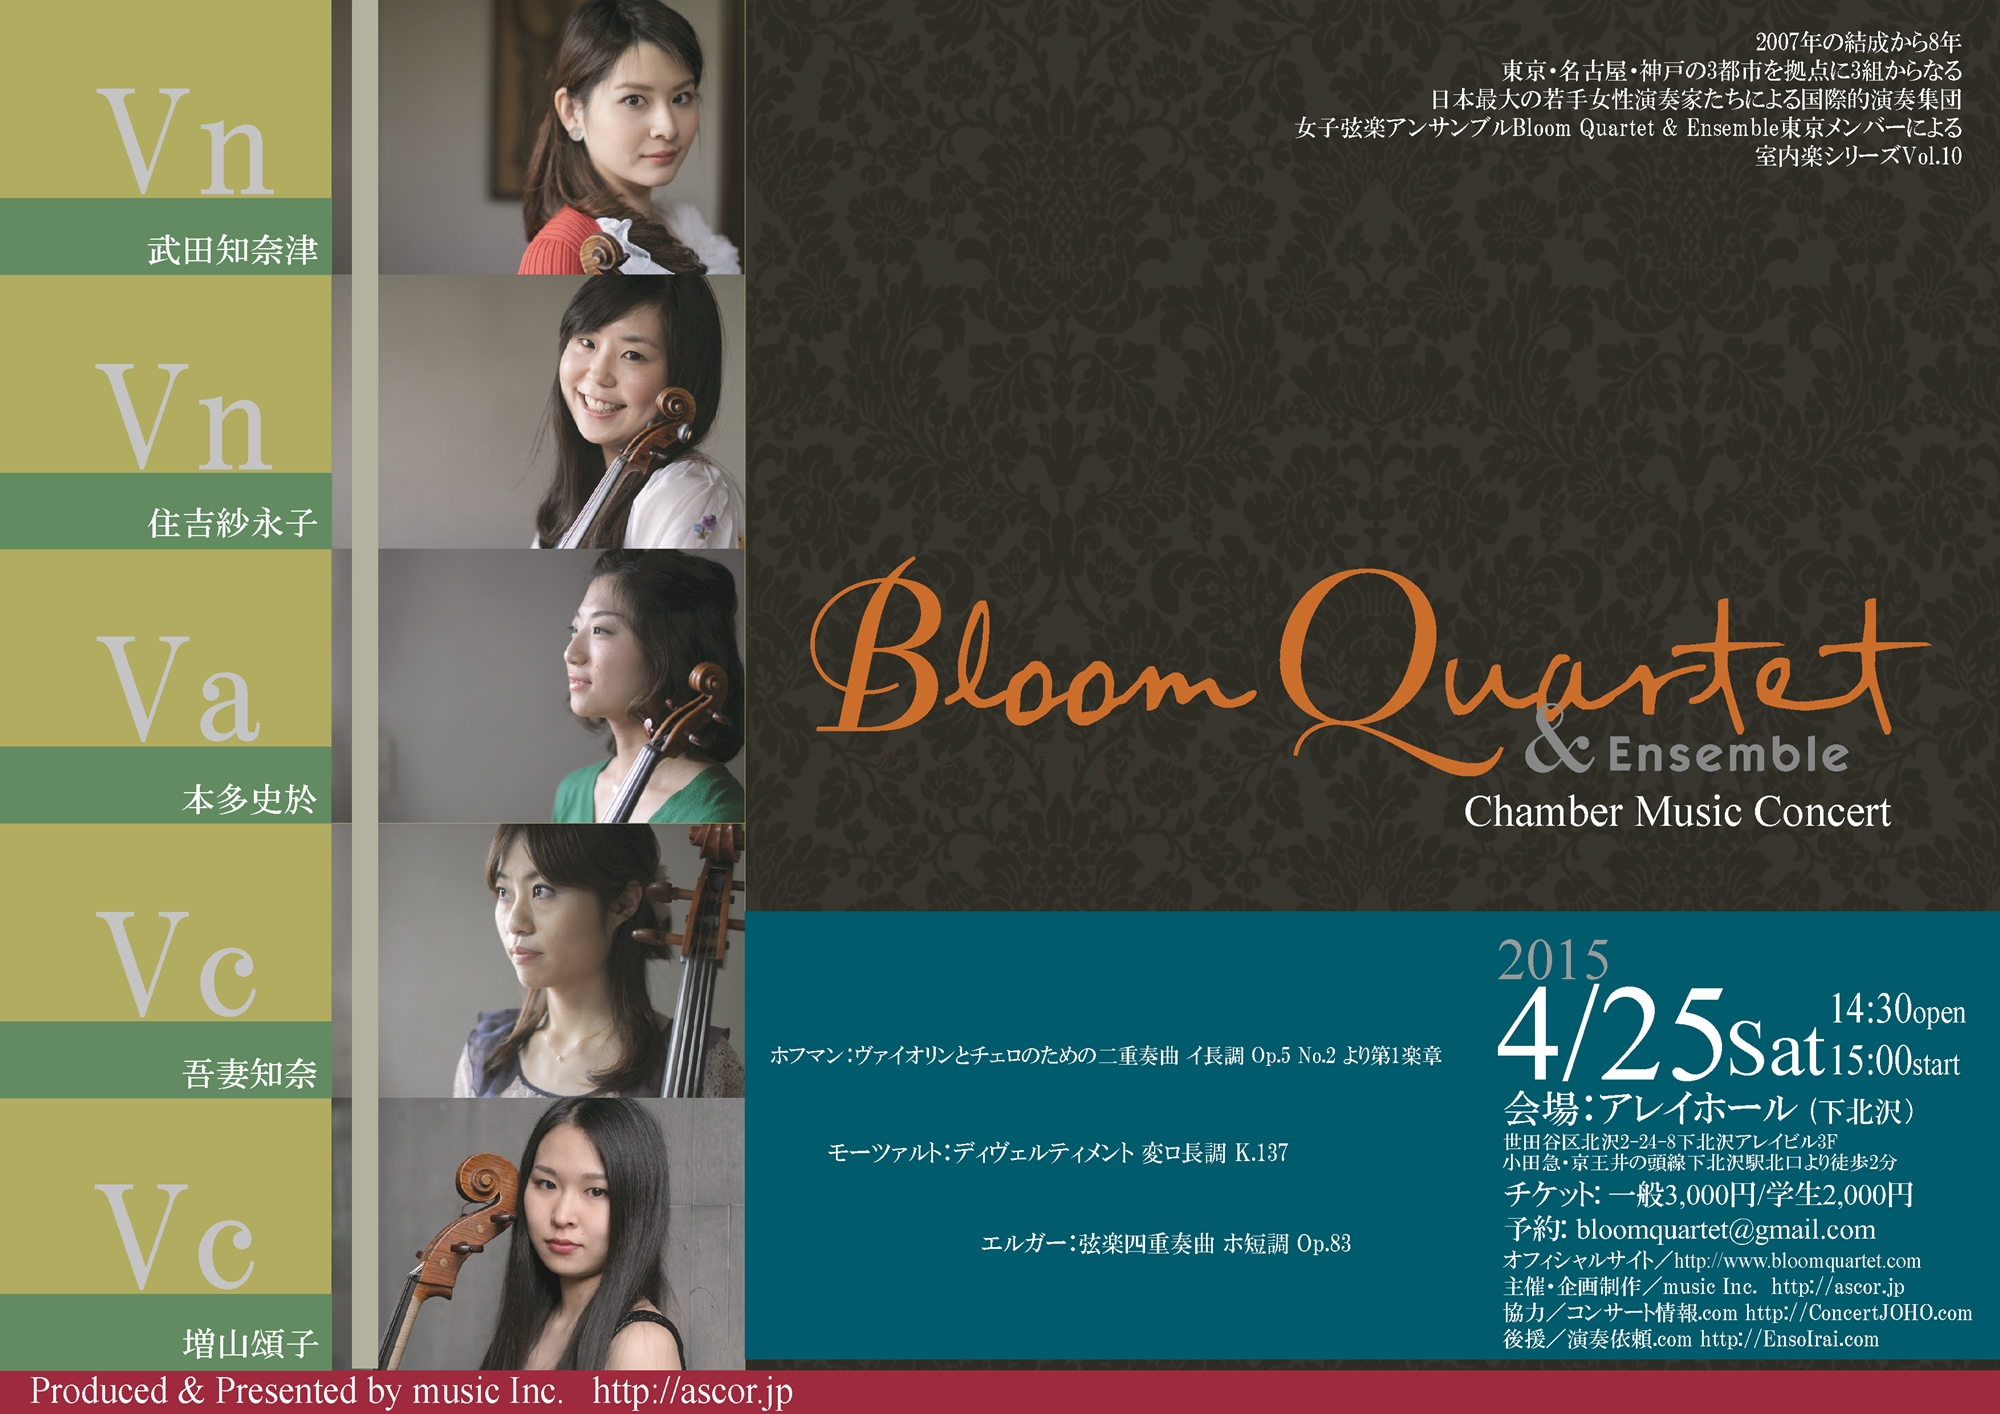 Bloom Quartet & Ensemble